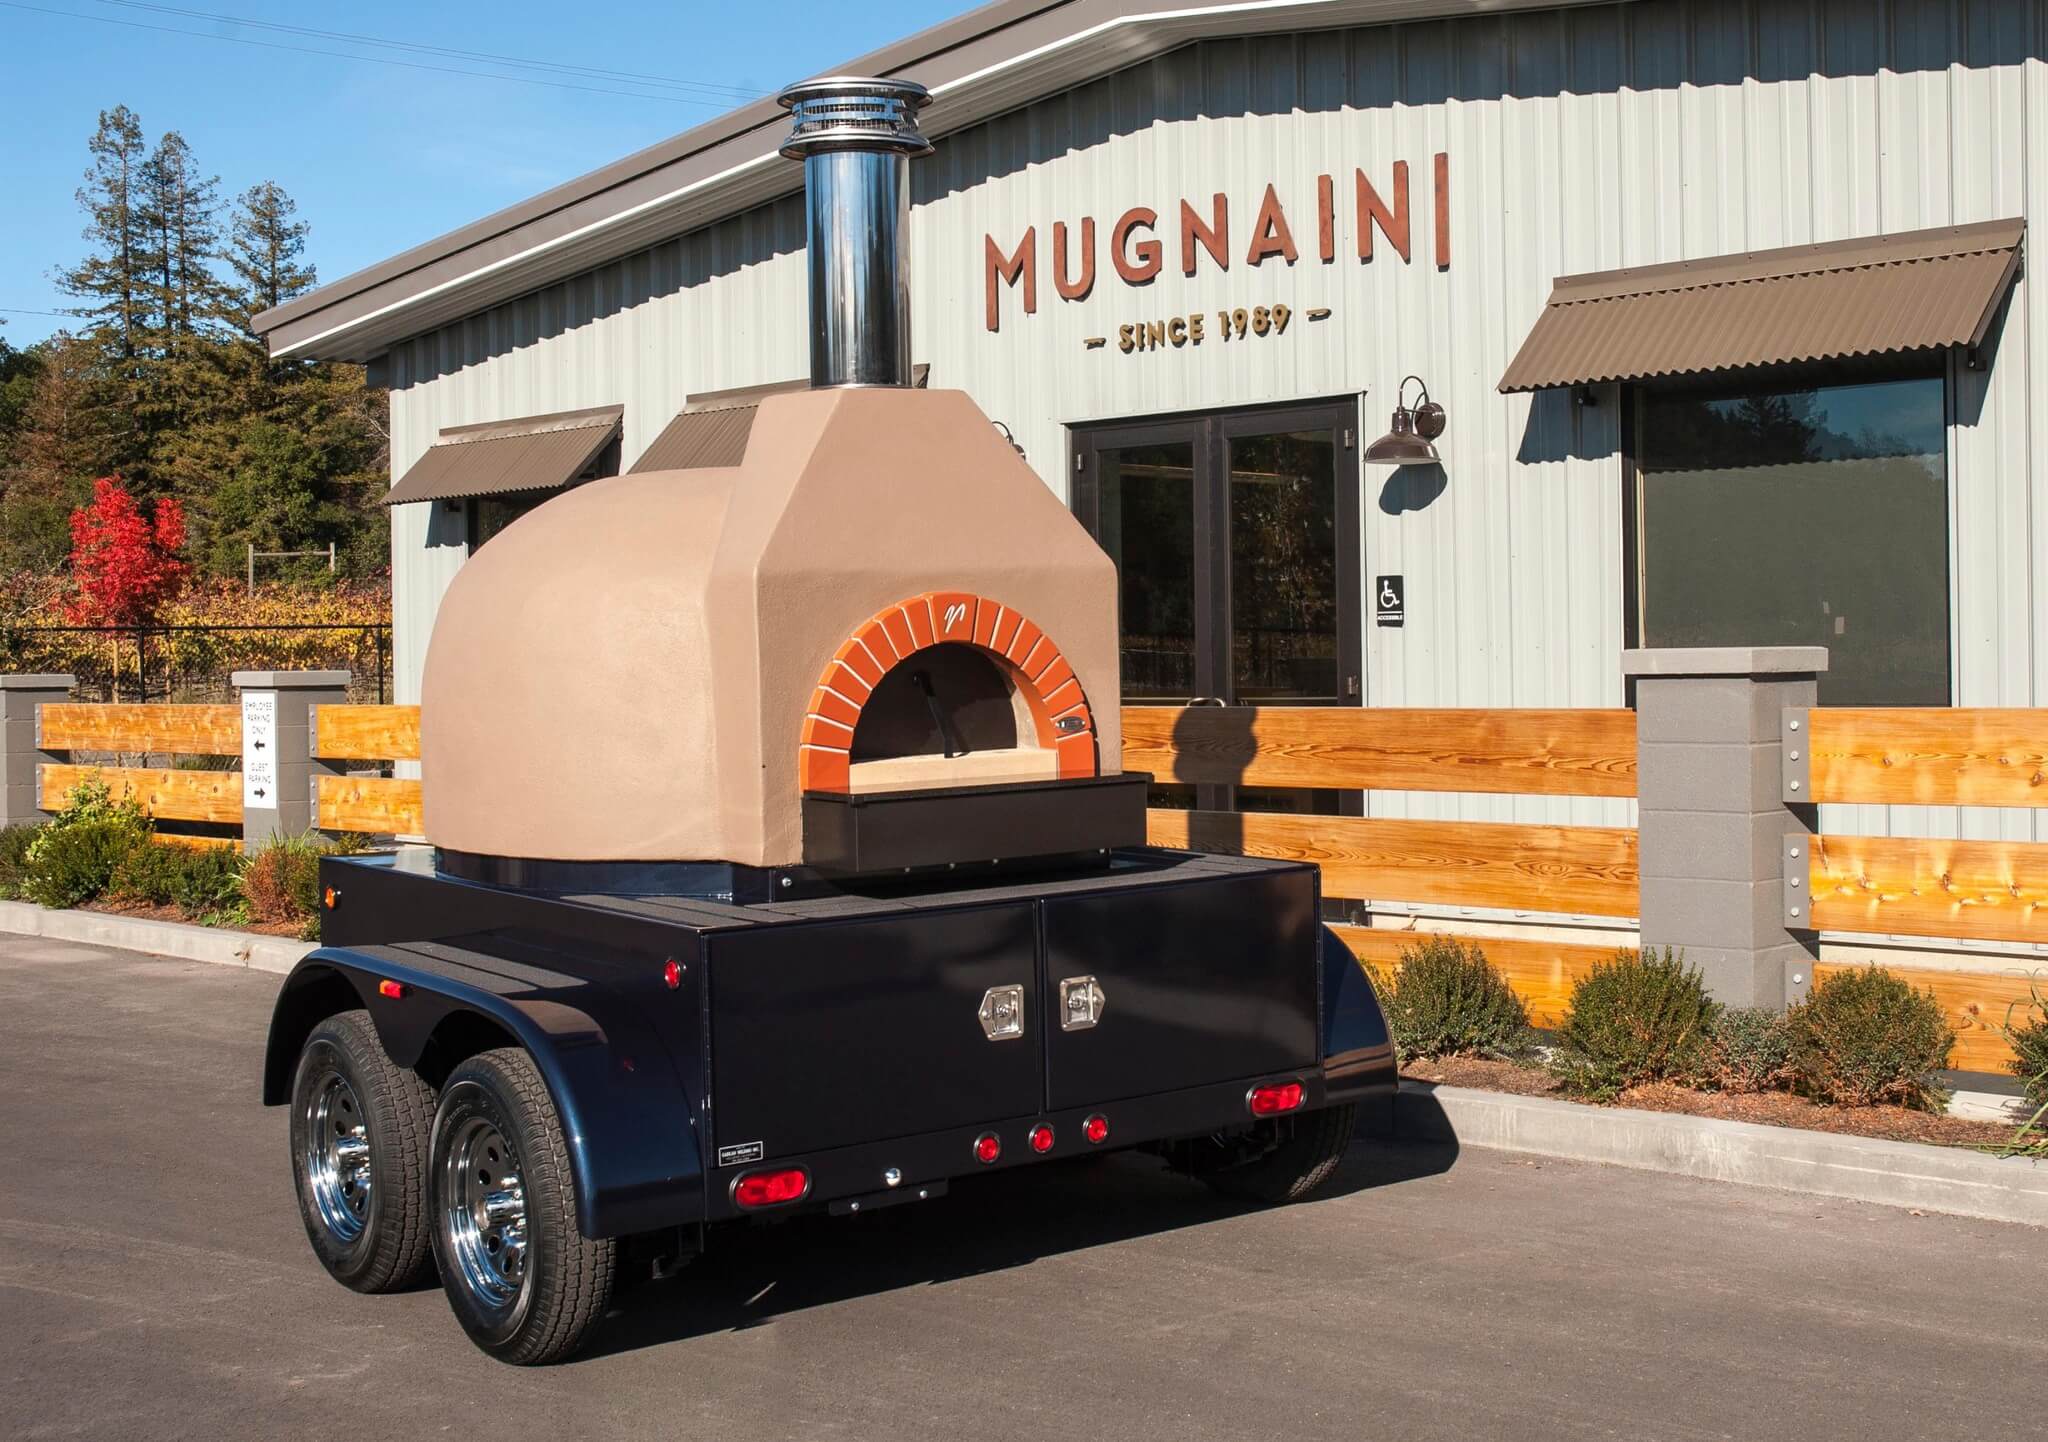 Portable Mugnaini oven at Mugnaini